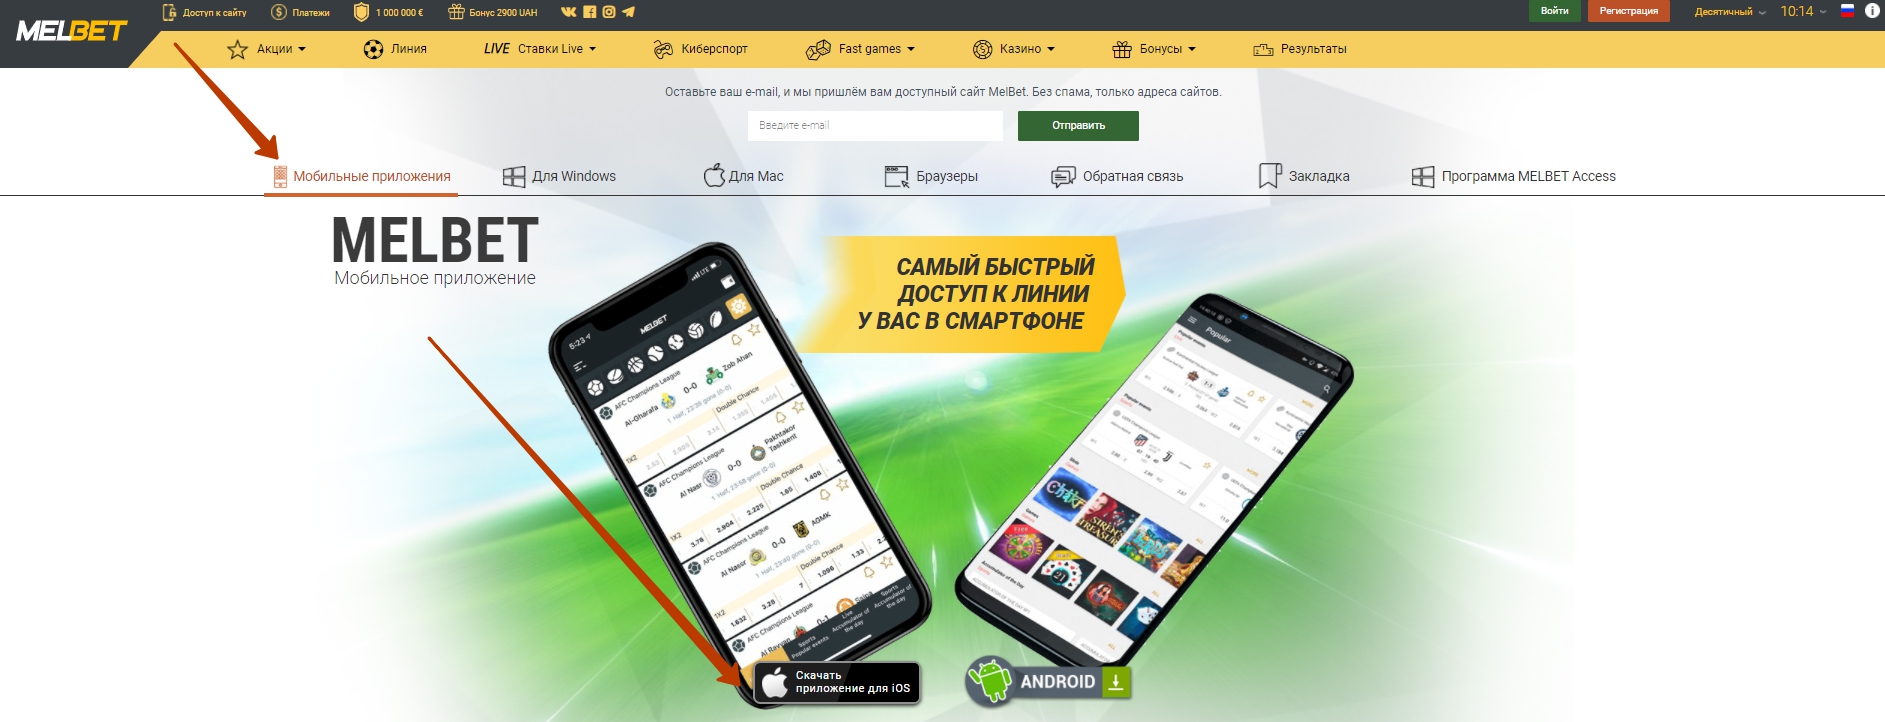 Казино Вавада Vavada - приложение и мобильная версия